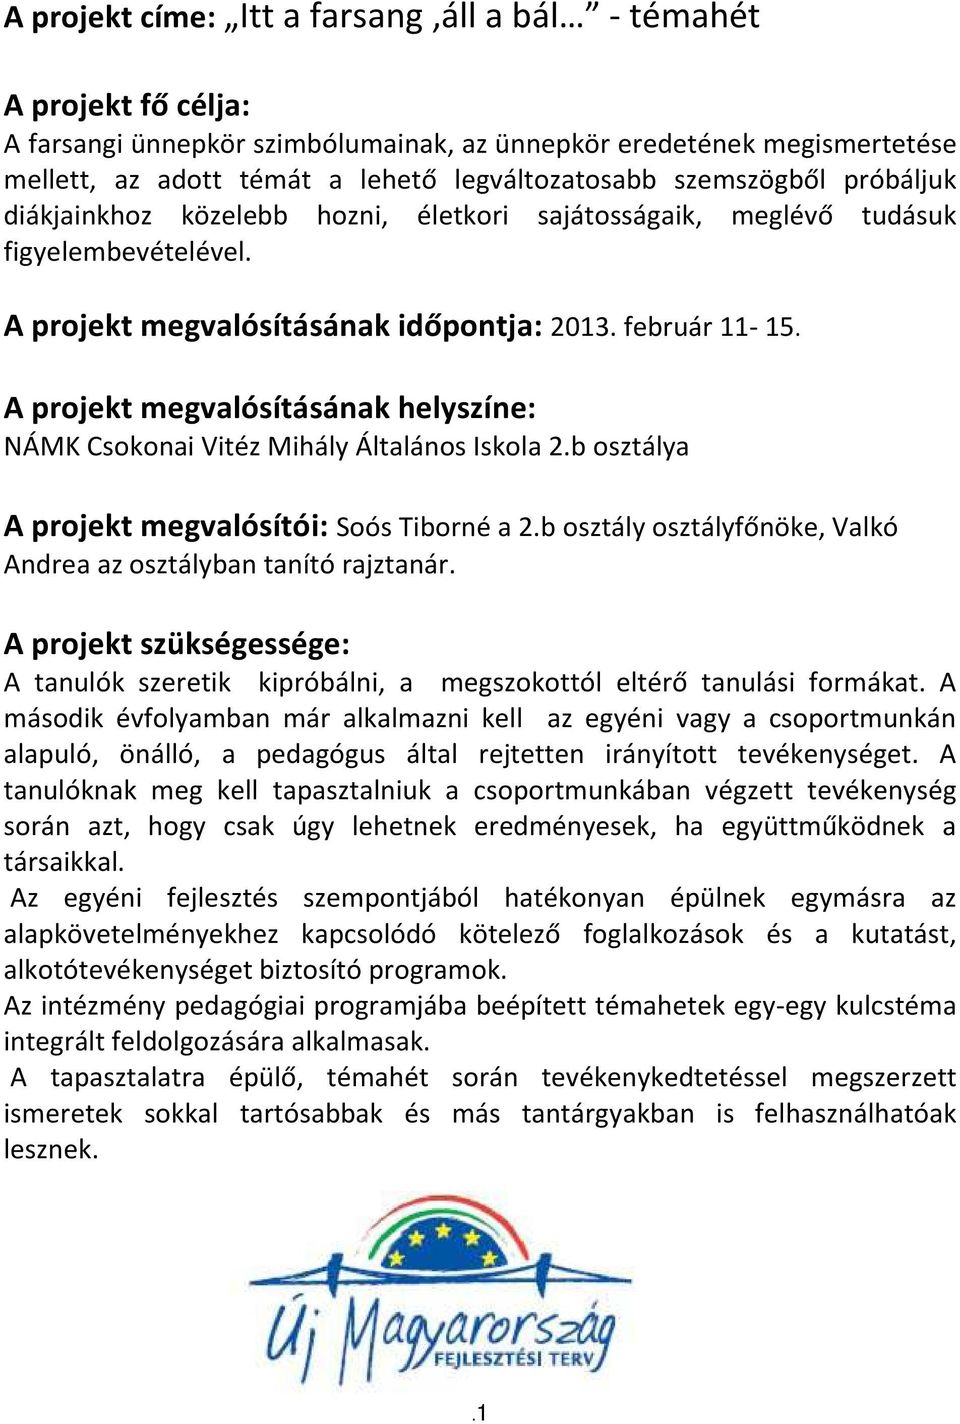 A projekt megvalósításának helyszíne: NÁMK Csokonai Vitéz Mihály Általános Iskola 2.b osztálya A projekt megvalósítói: Soós Tiborné a 2.